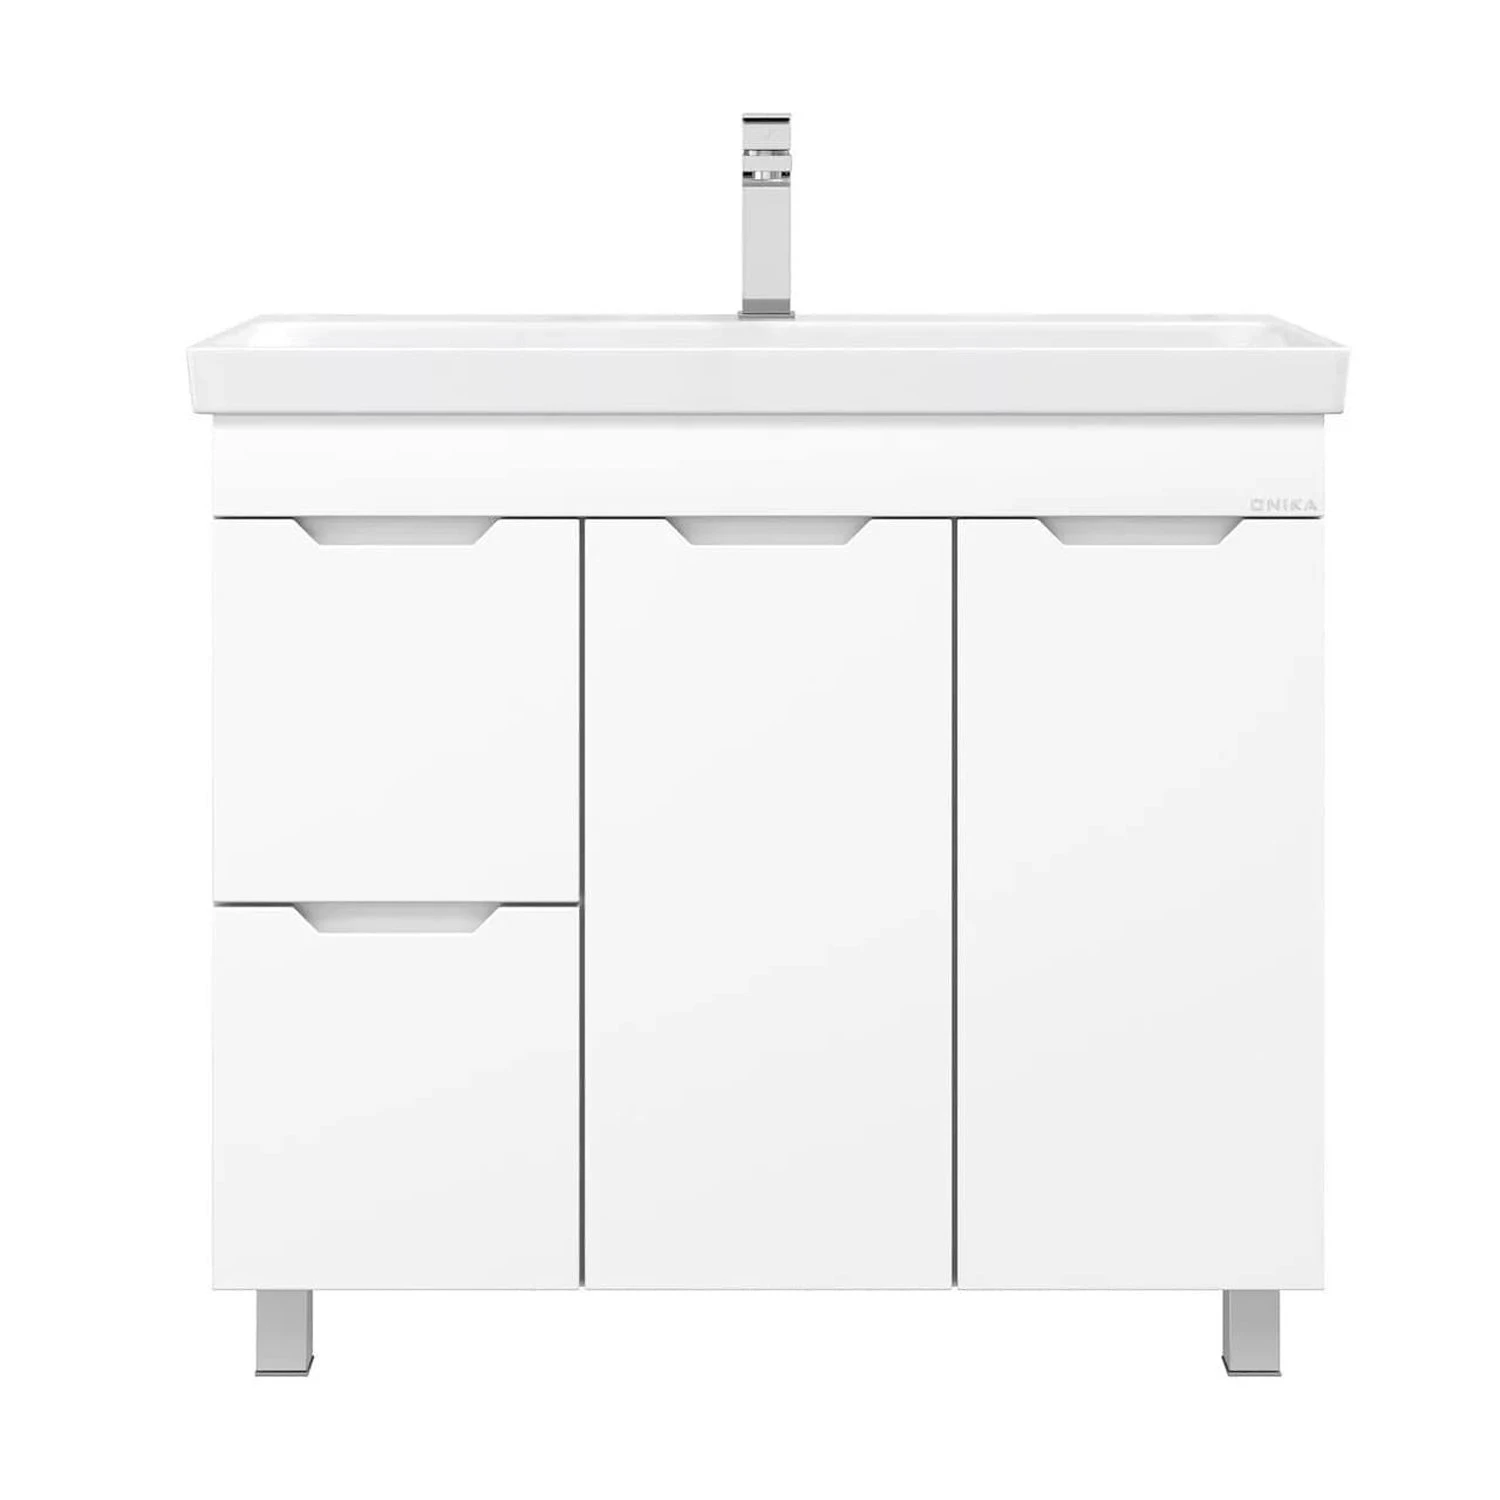 Мебель для ванной Оника Айленд 90, с бельевой корзиной, цвет белый - фото 1